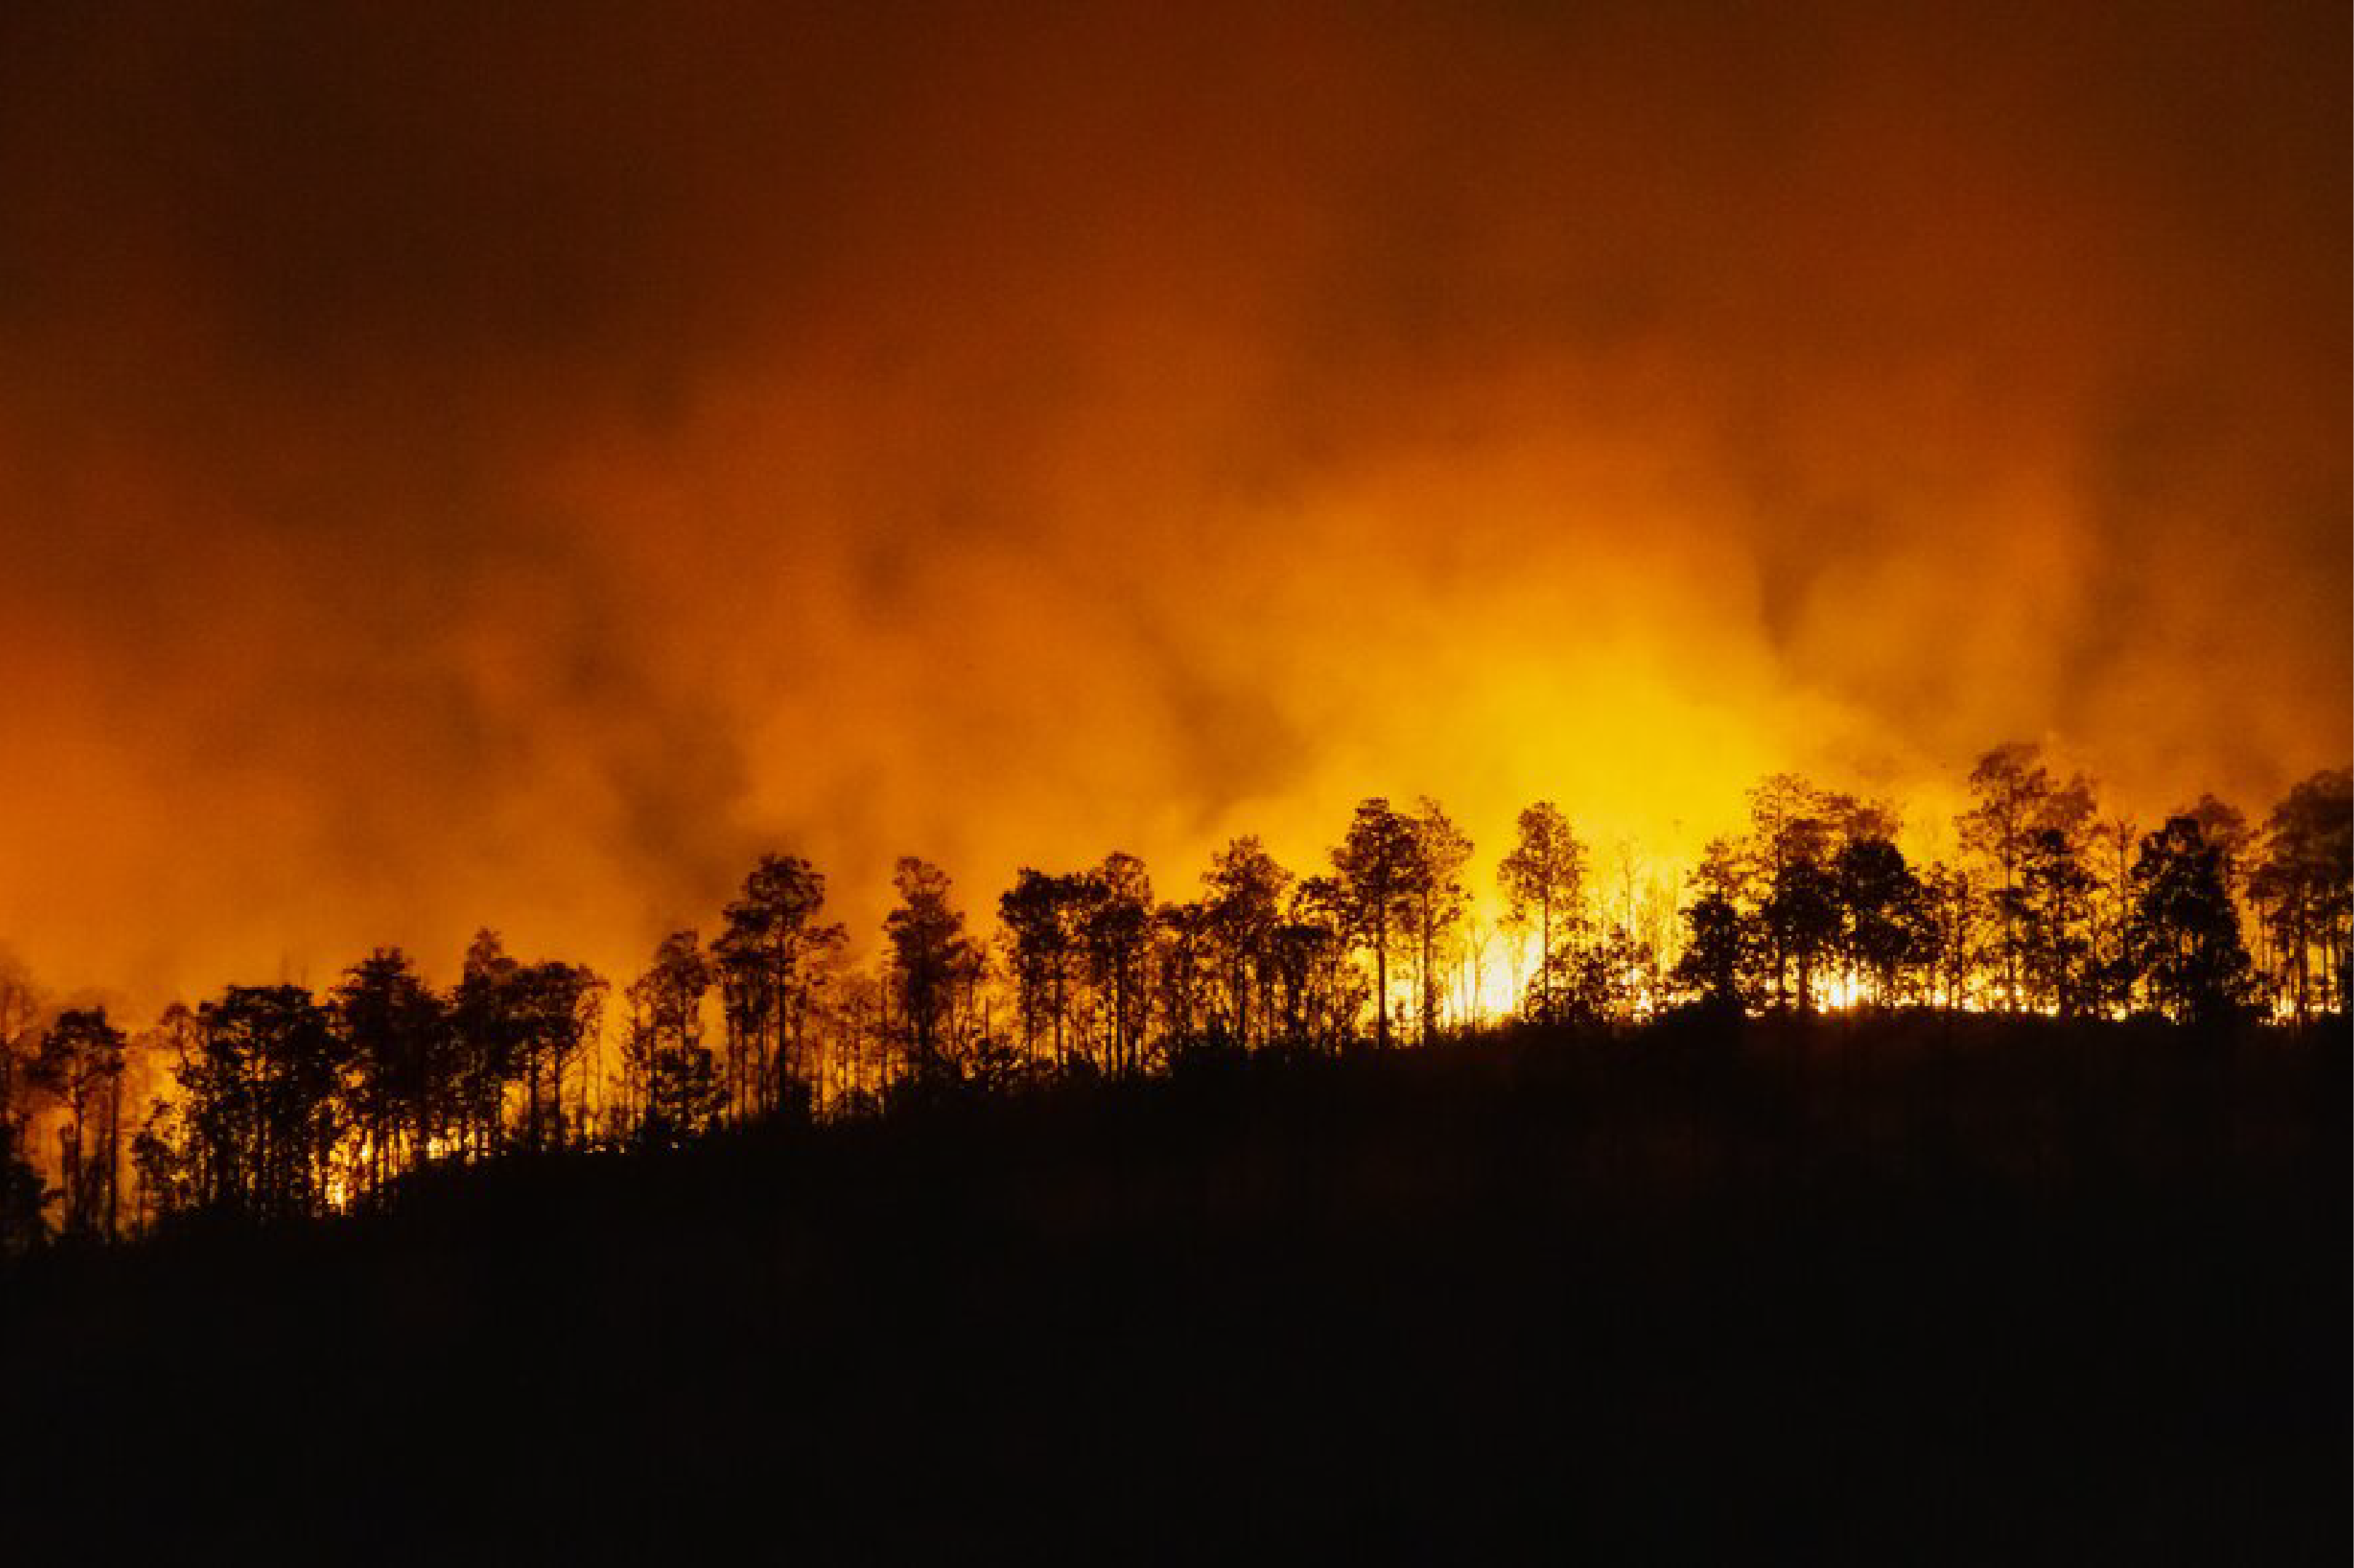 Risques d'incendies de forêt dans plusieurs provinces au Maroc (liste)